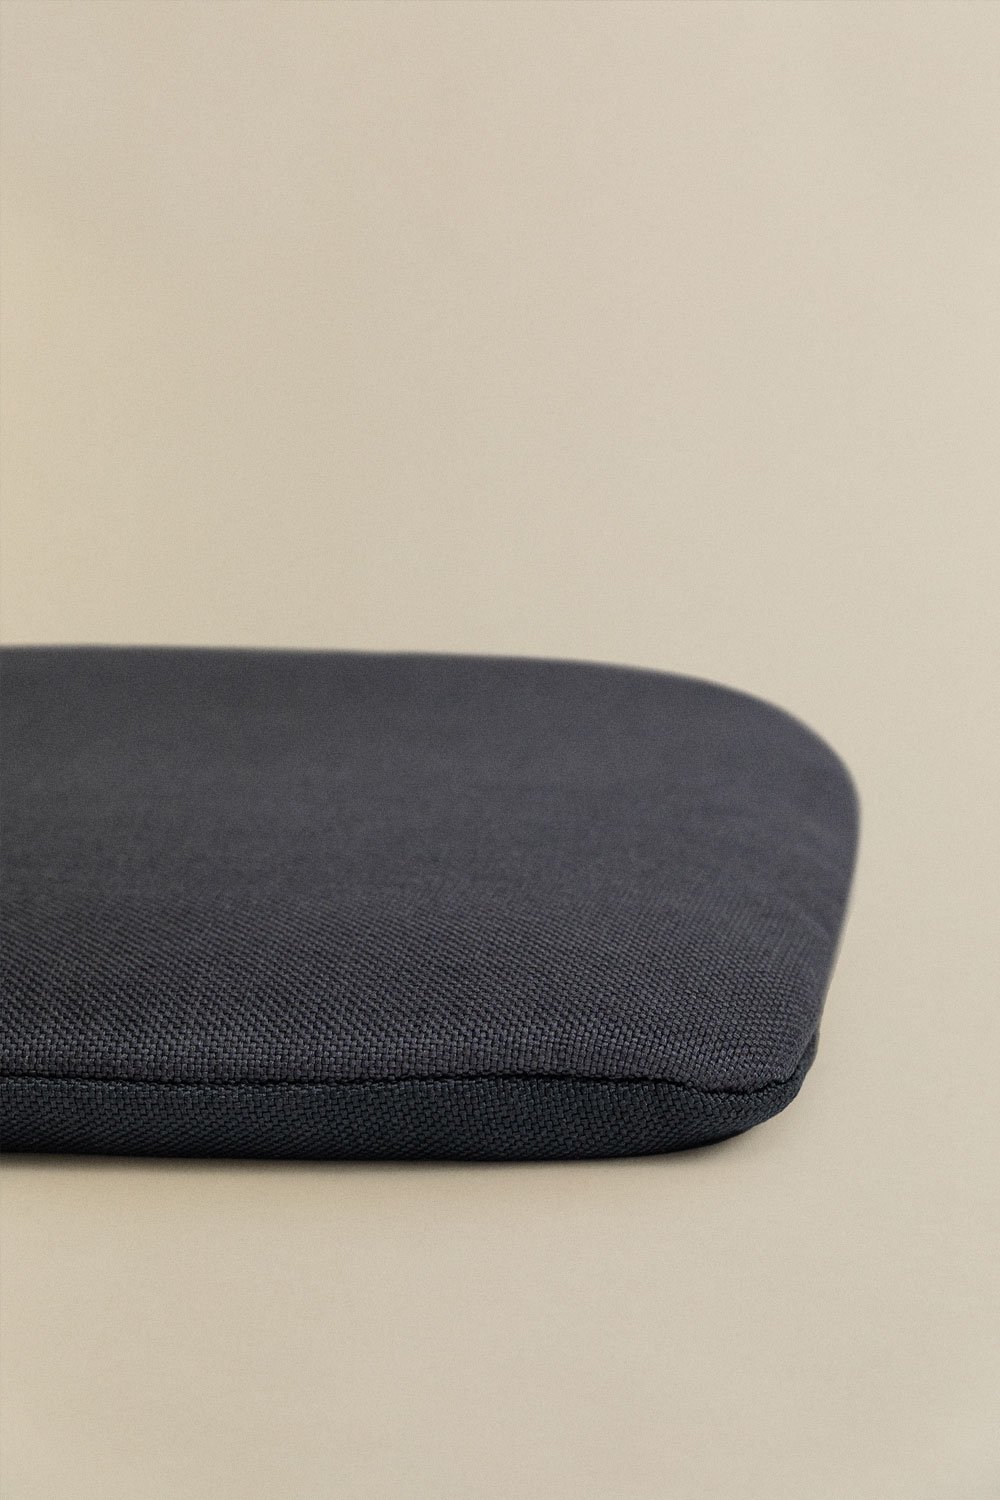 Cuscino in tessuto per sedia LIX, immagine della galleria 2